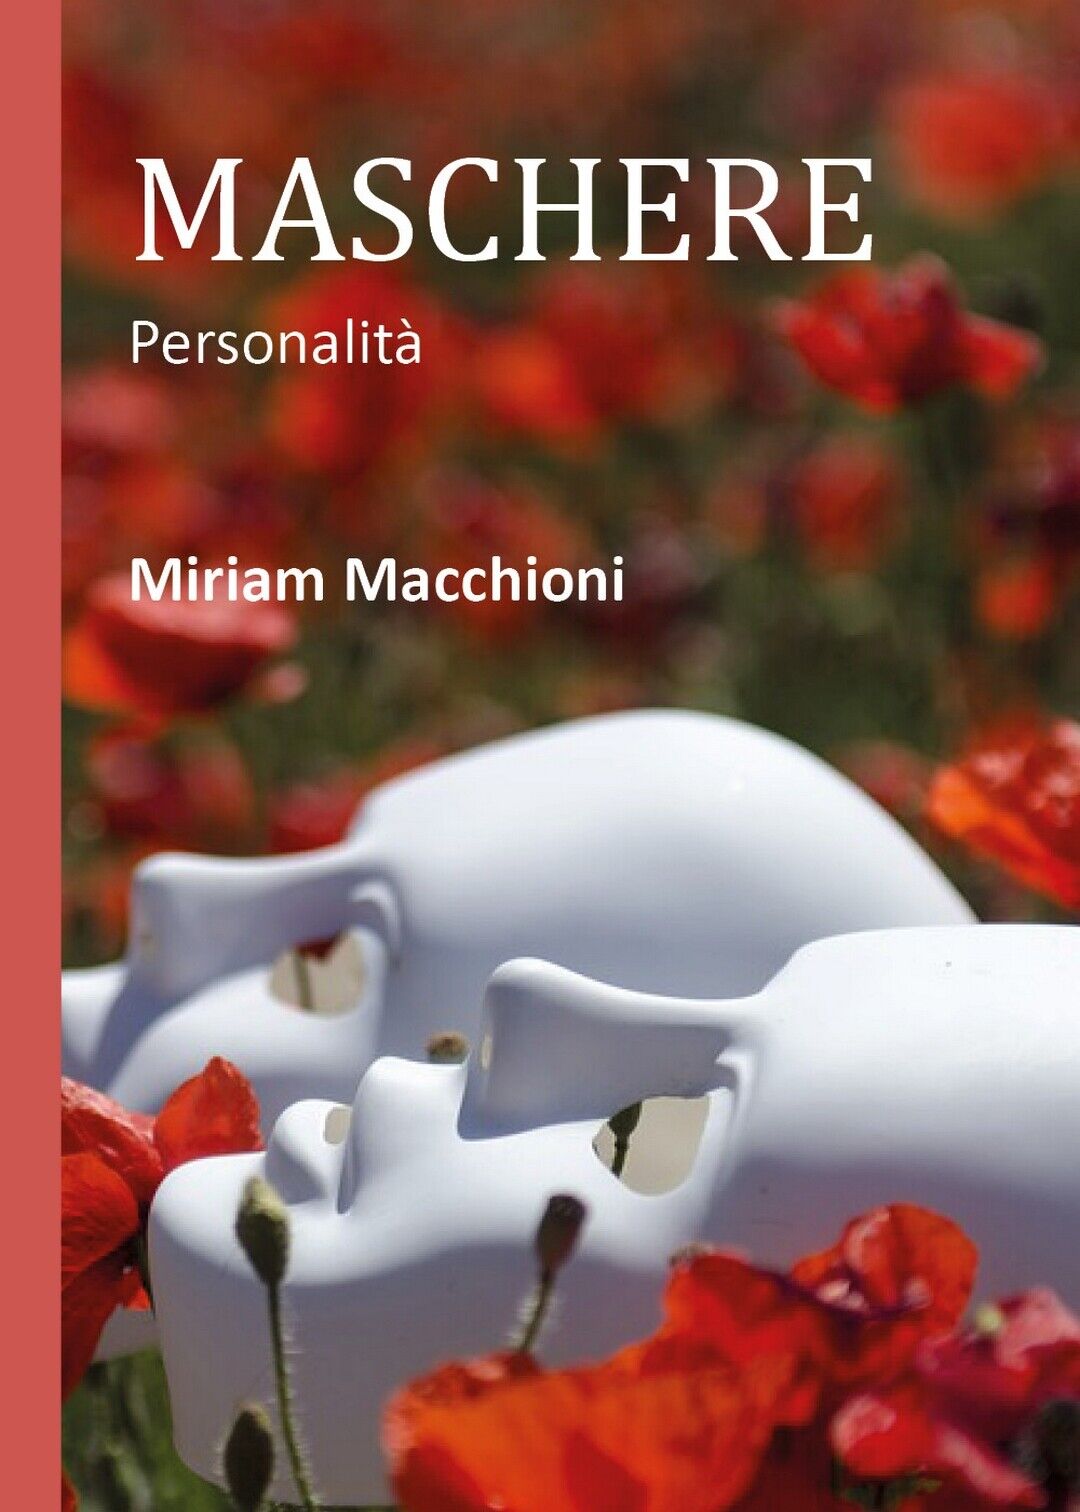 Maschere  di Miriam Macchioni,  2018,  Youcanprint